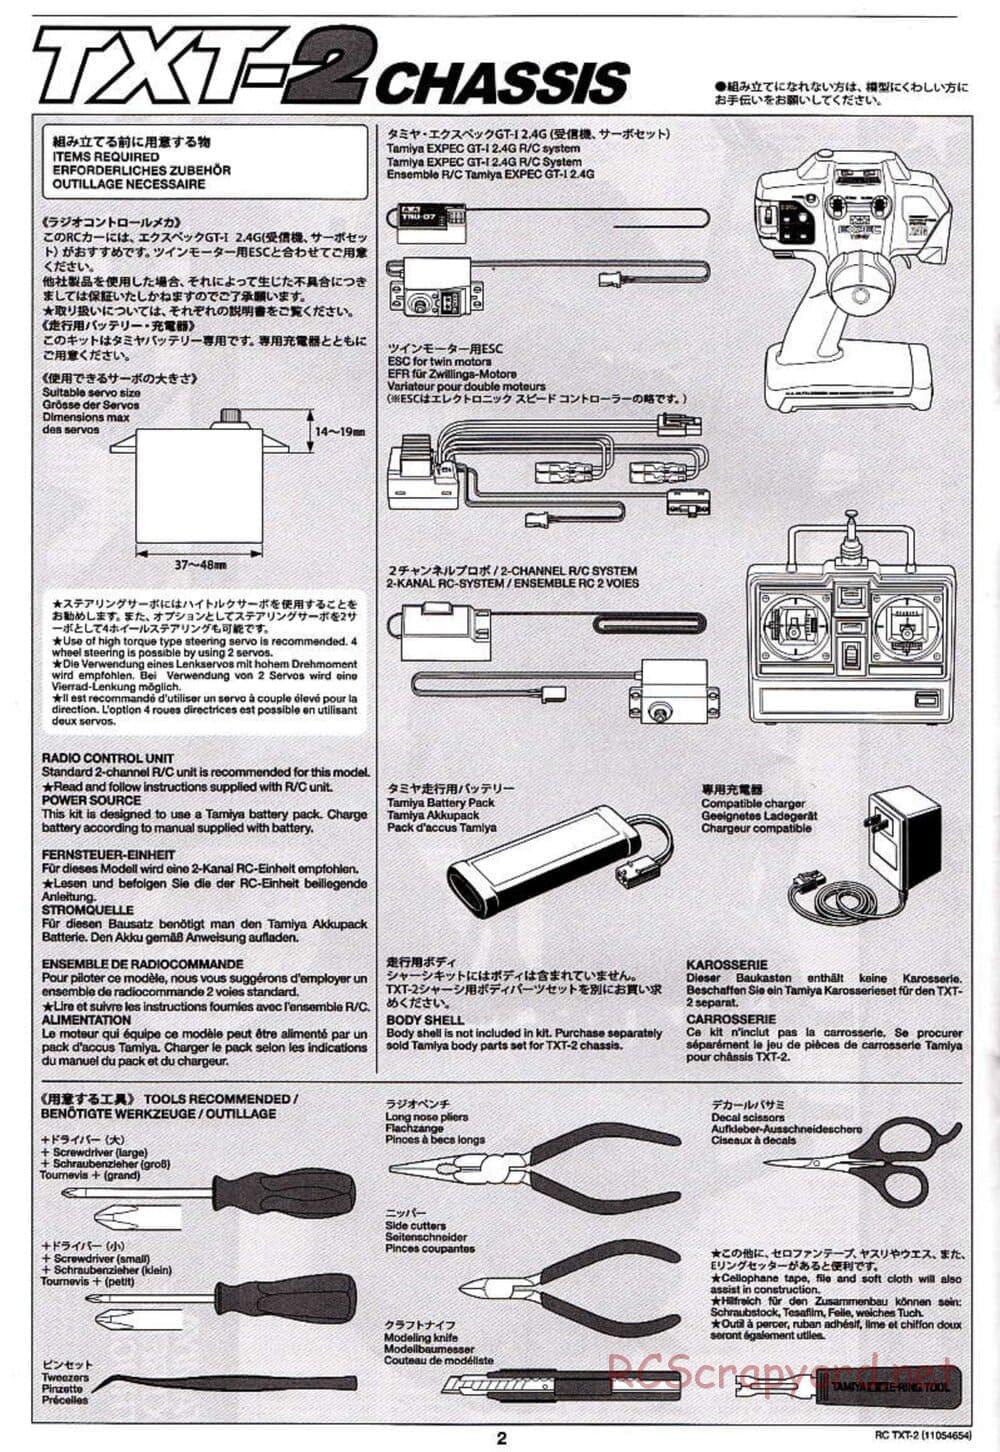 Tamiya - TXT-2 Chassis - Manual - Page 2